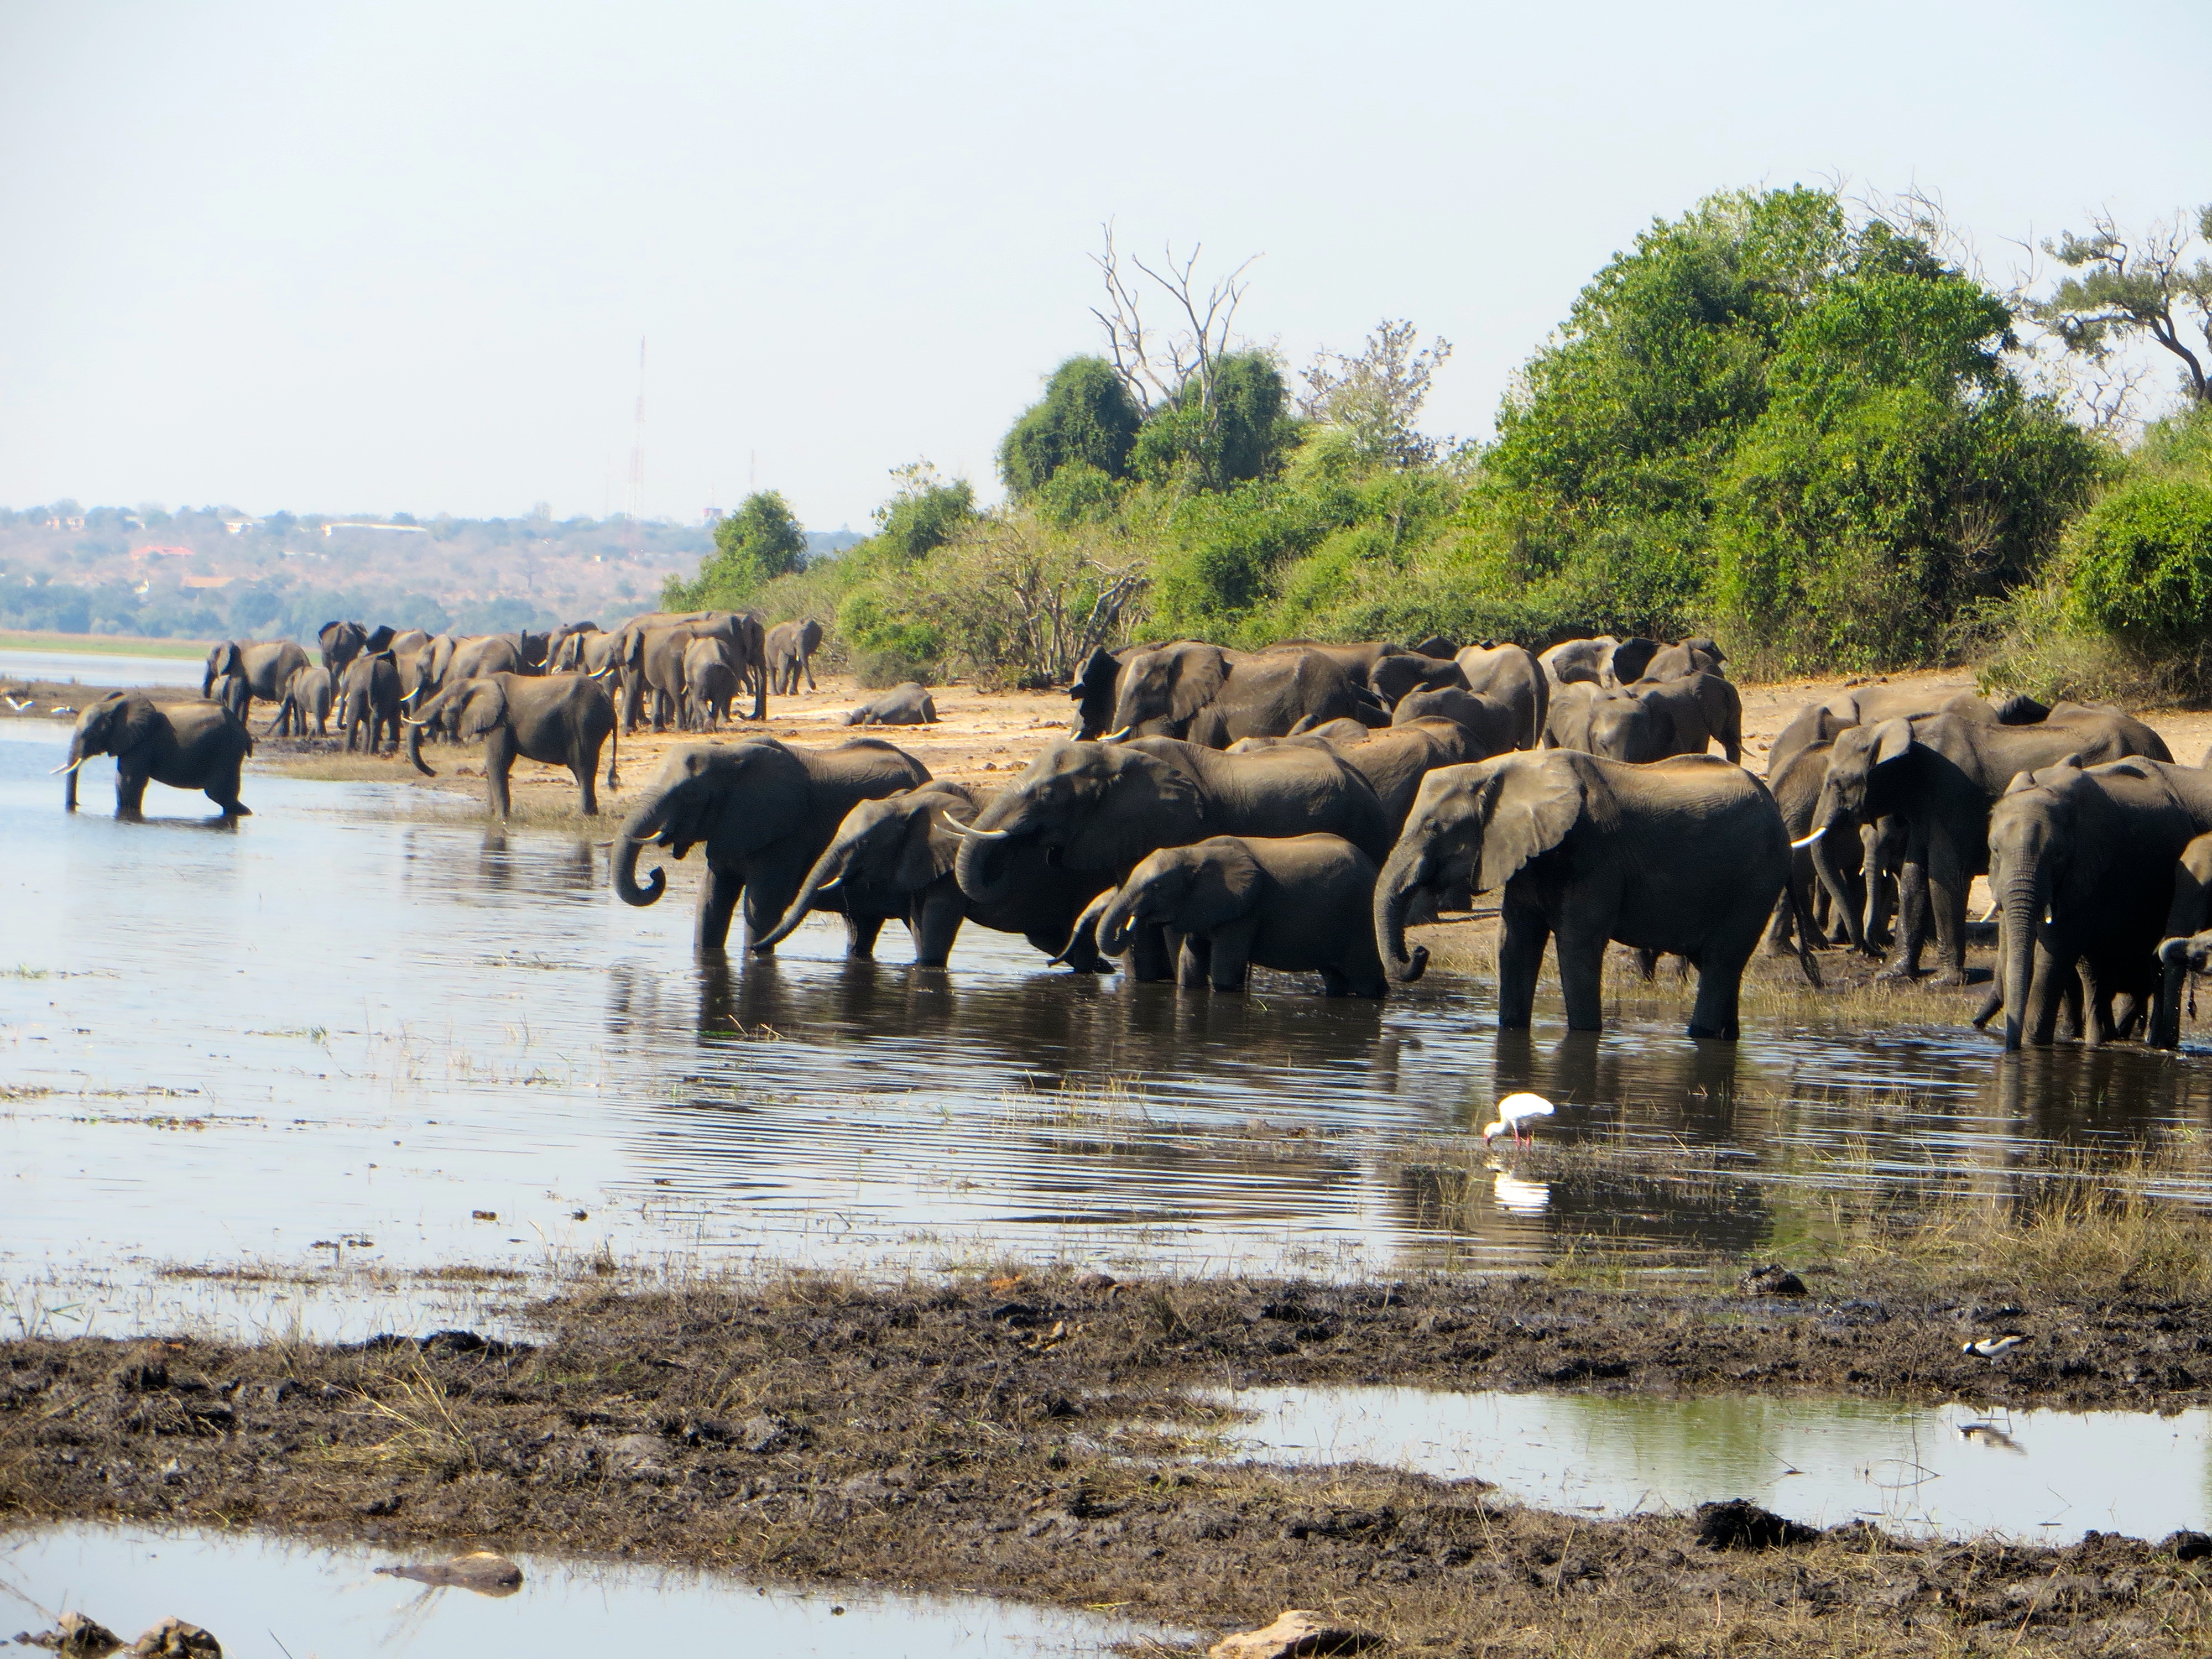 elephants at Chobe National Park, Botswana